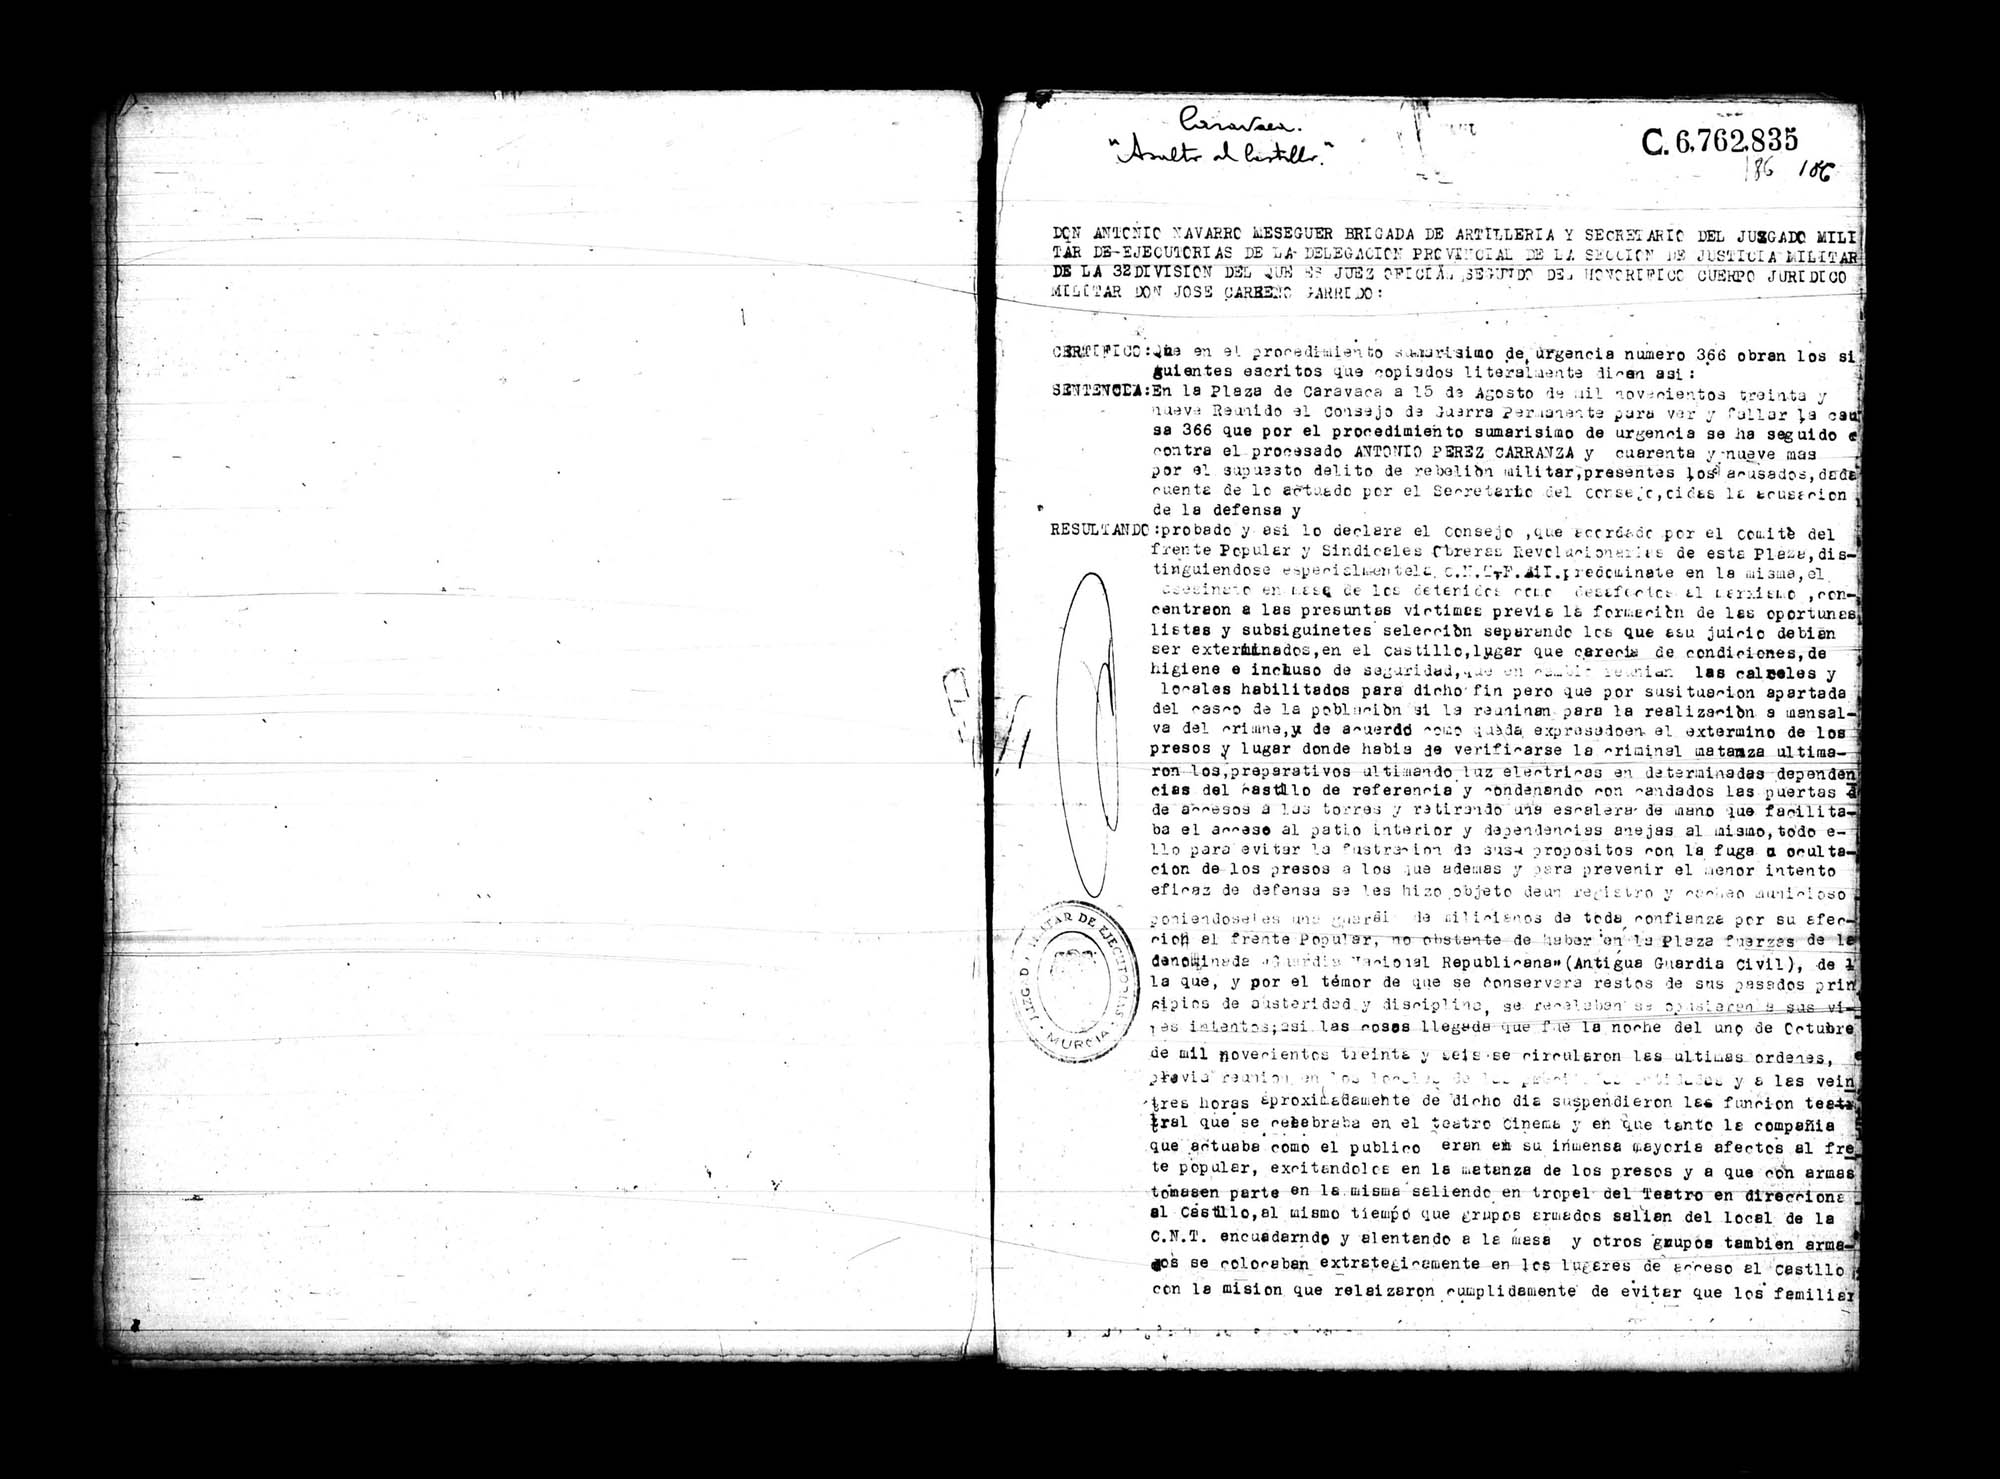 Certificado de la sentencia pronunciada contra Antonio Pérez Carranza y varios reos más, causa 366, el 15 de agosto de 1939 en Caravaca.